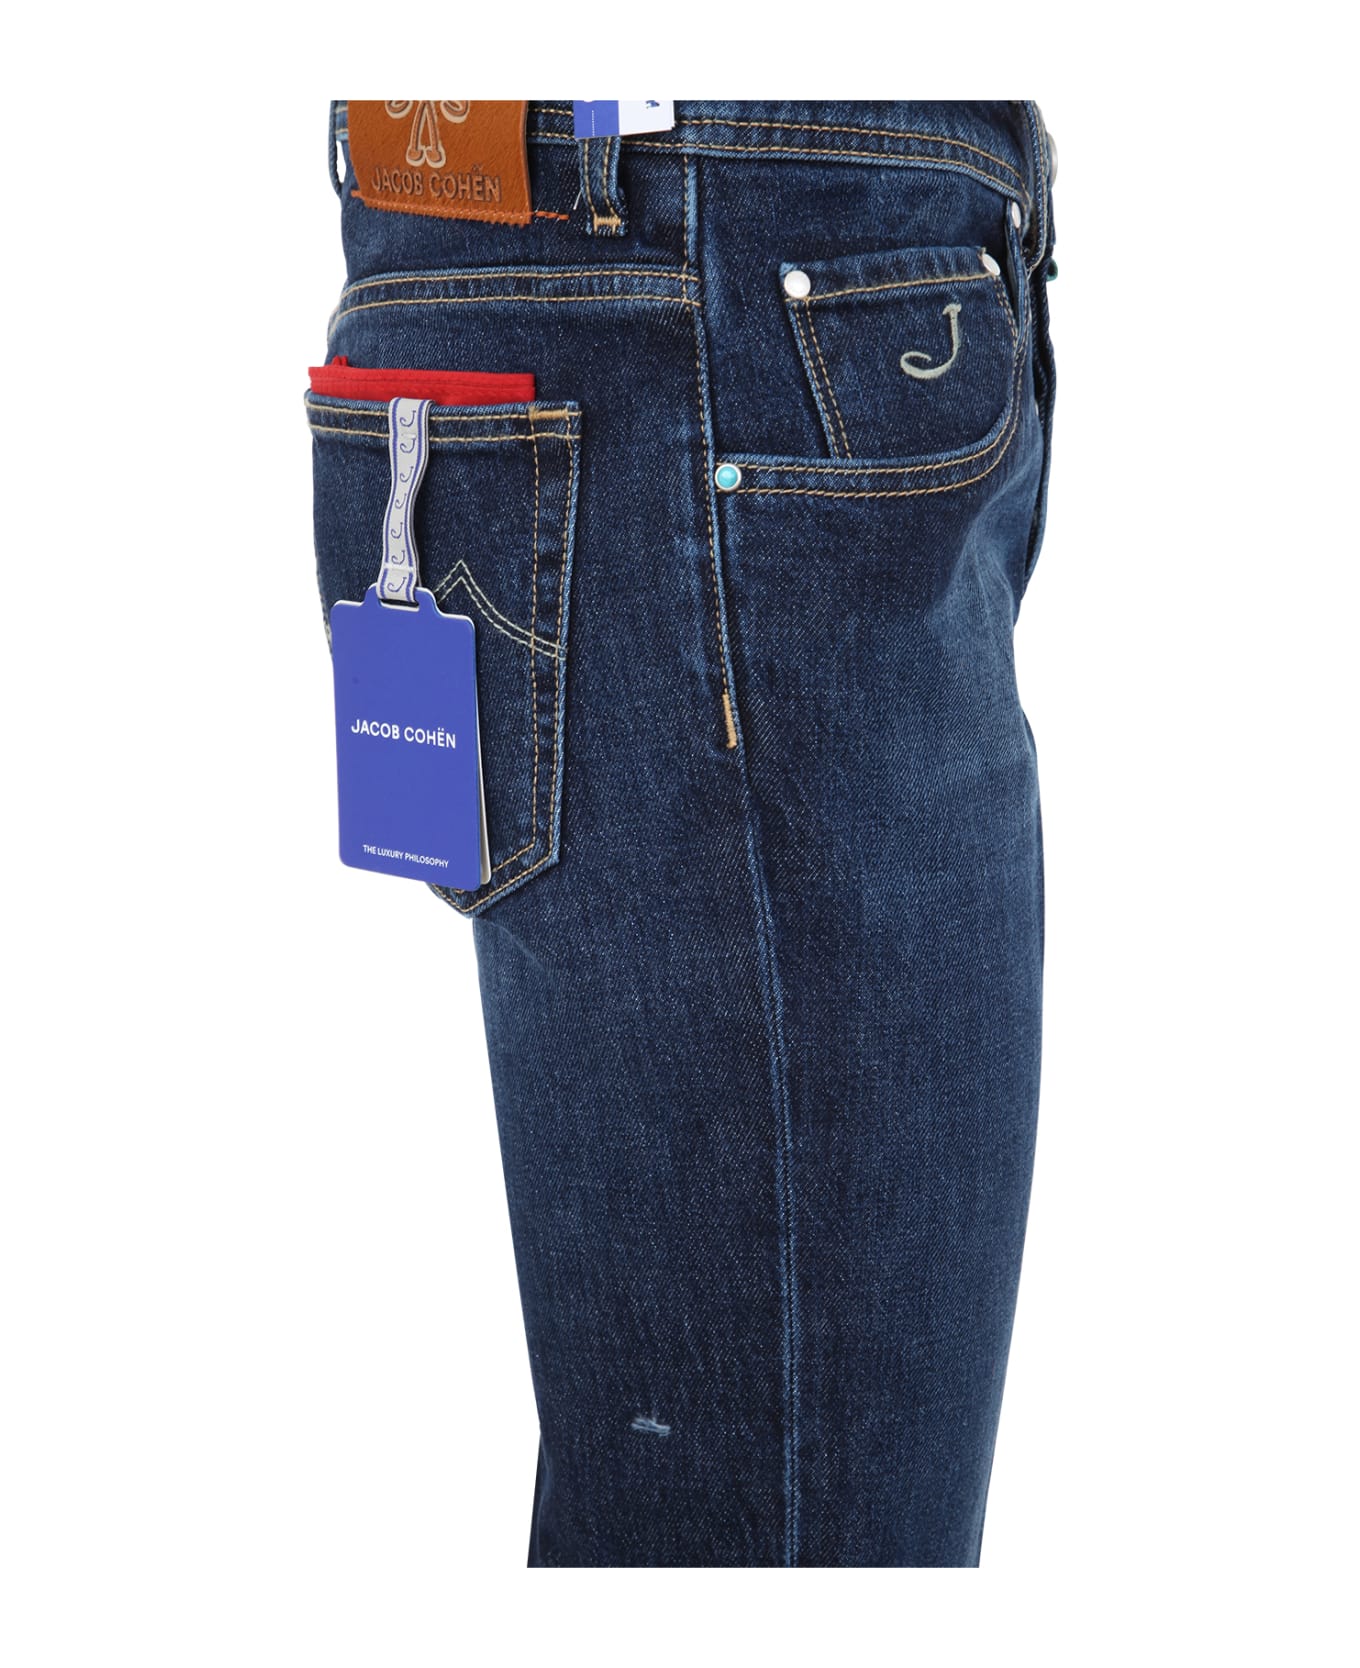 Jacob Cohen Scott Slim Crop Carrot Fit Five Pockets Jeans - Denim